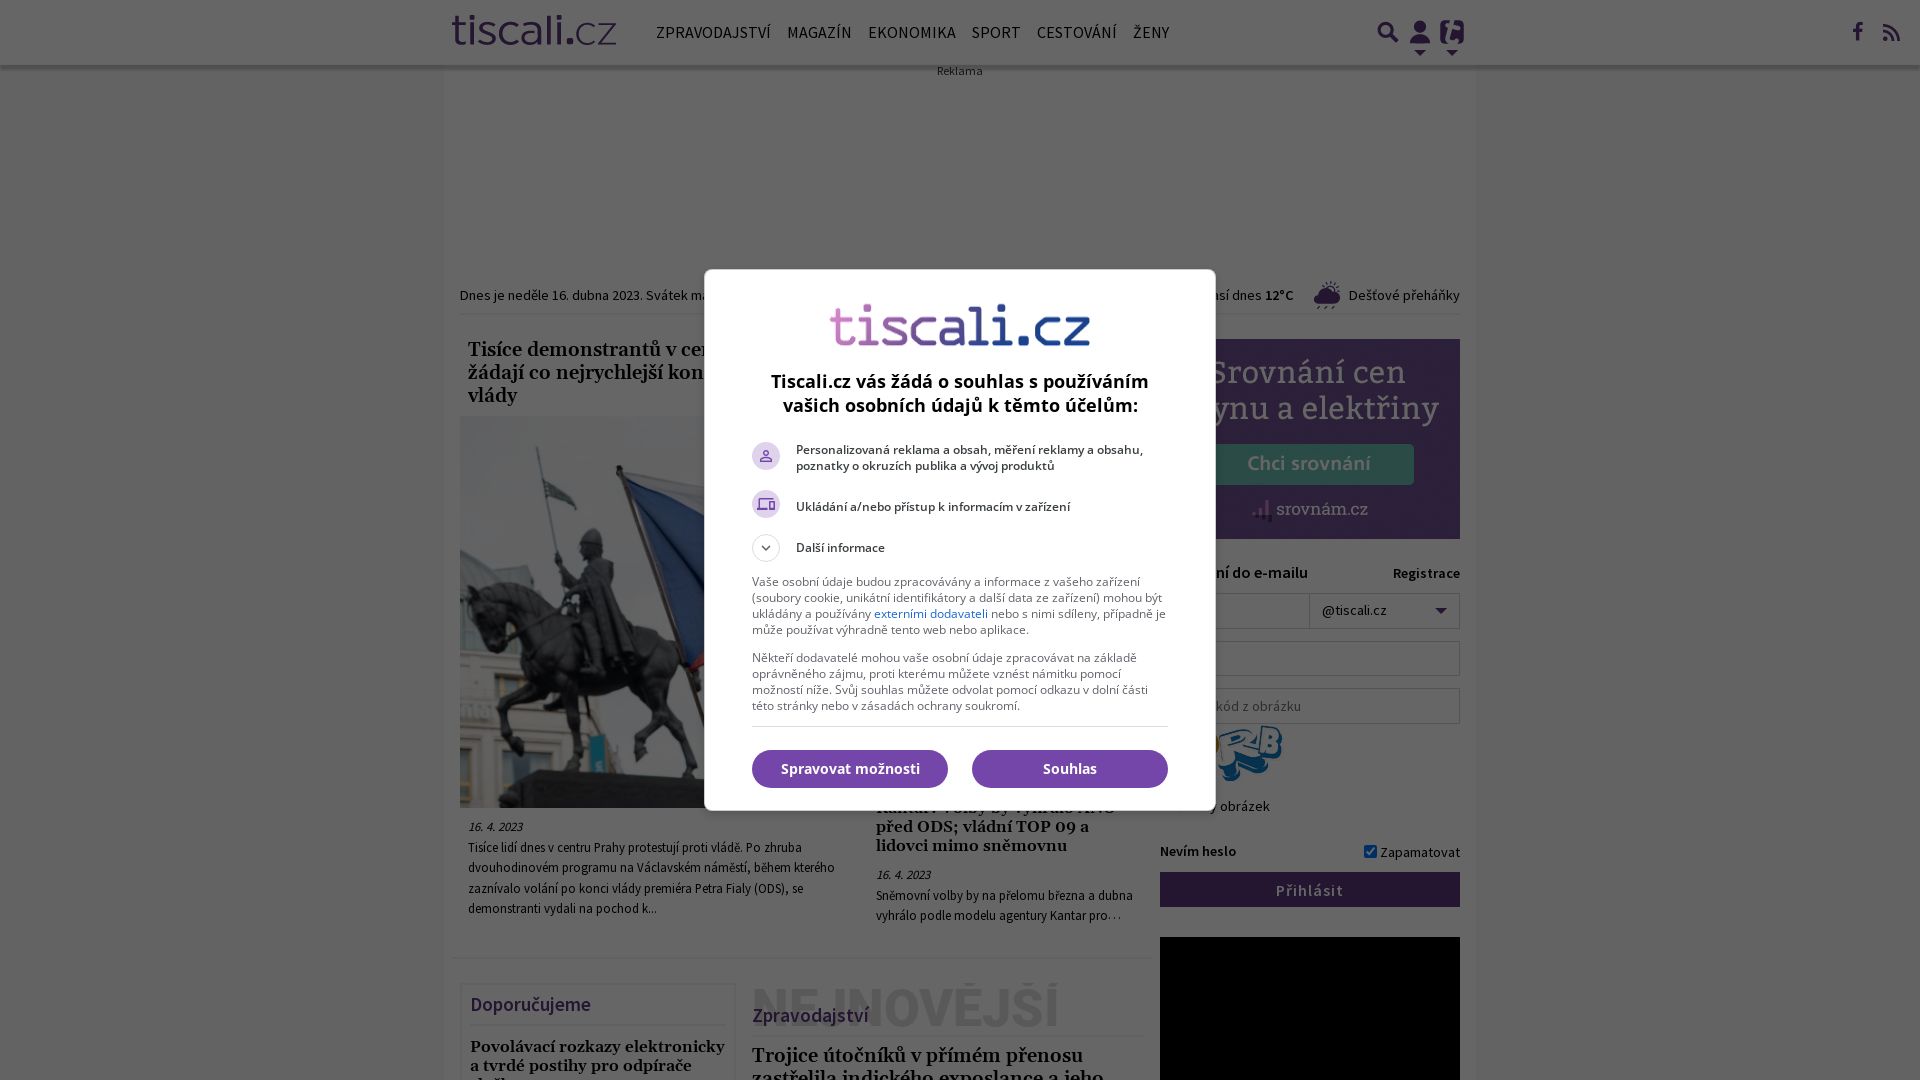 Status do site tiscali.cz está   ONLINE